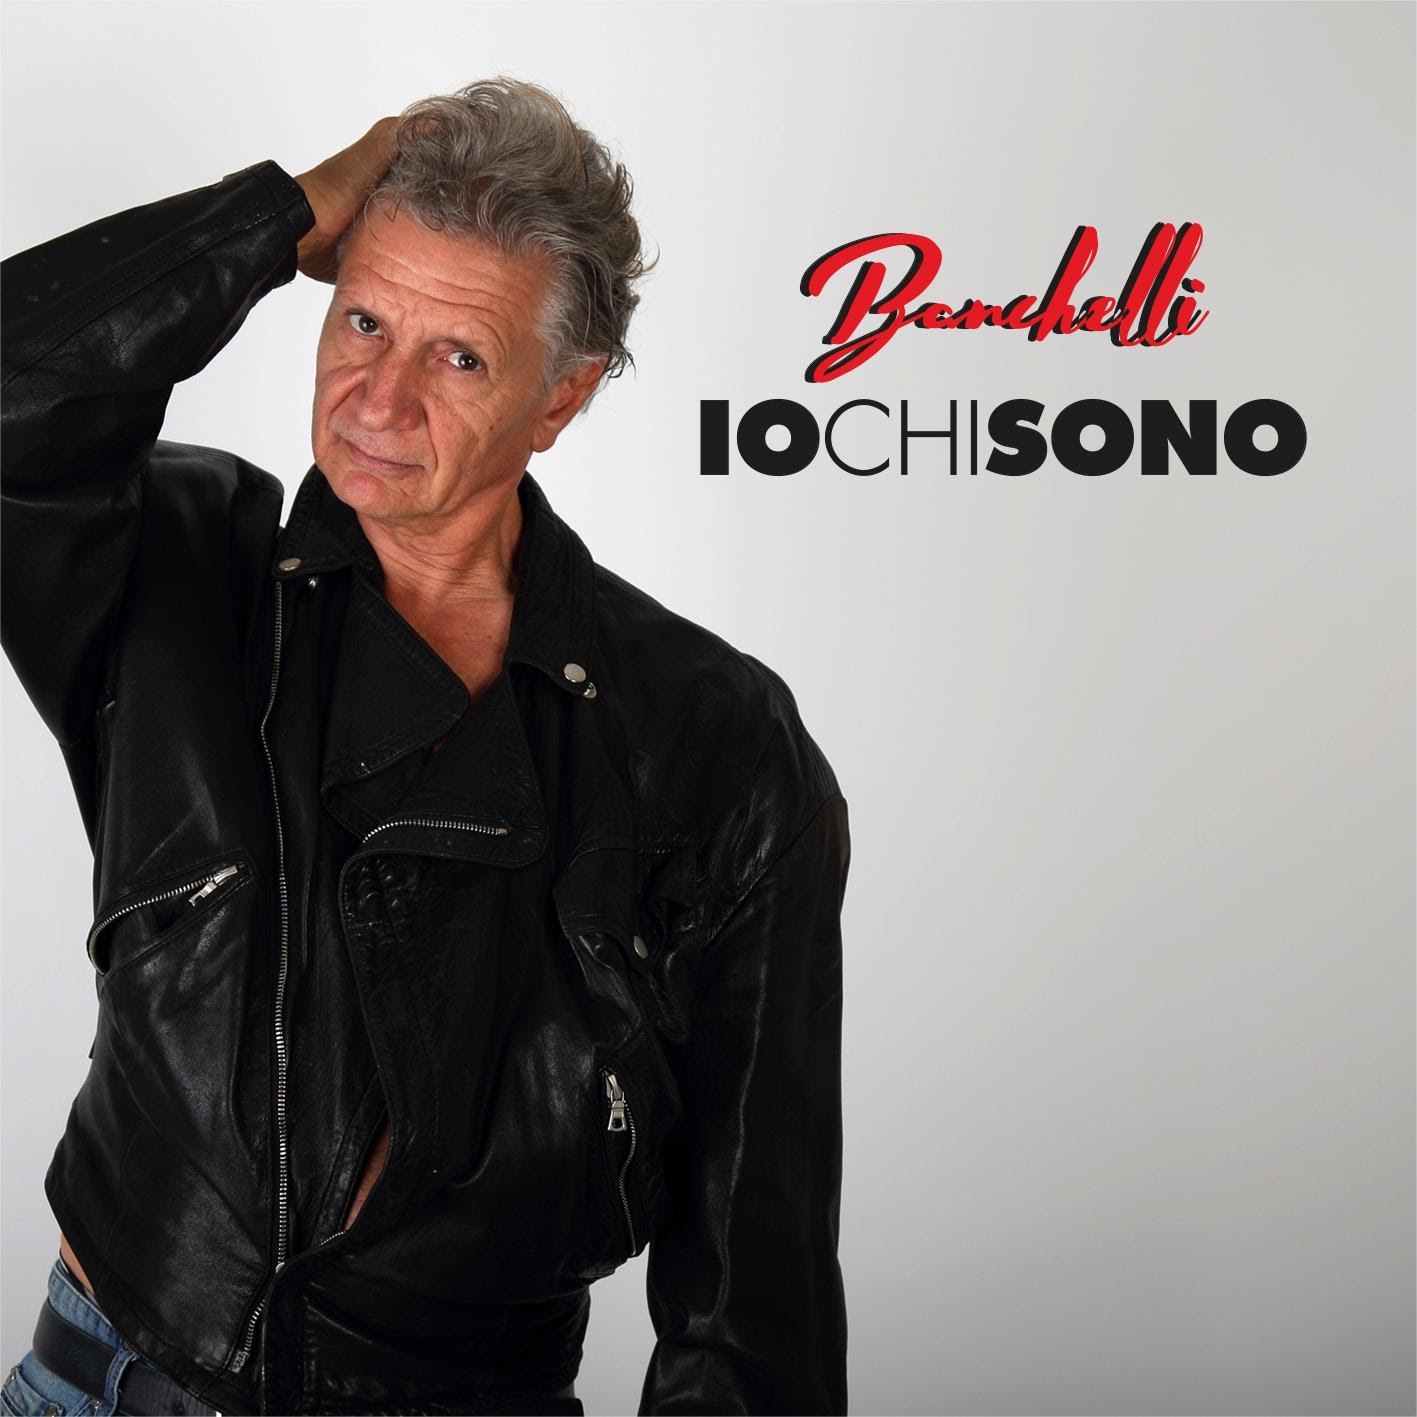 Banchelli “Io chi sono” il nuovo singolo del poliedrico cantautore fiorentino, noto per la sua partecipazione a Sanremo ‘84 con “Madame”